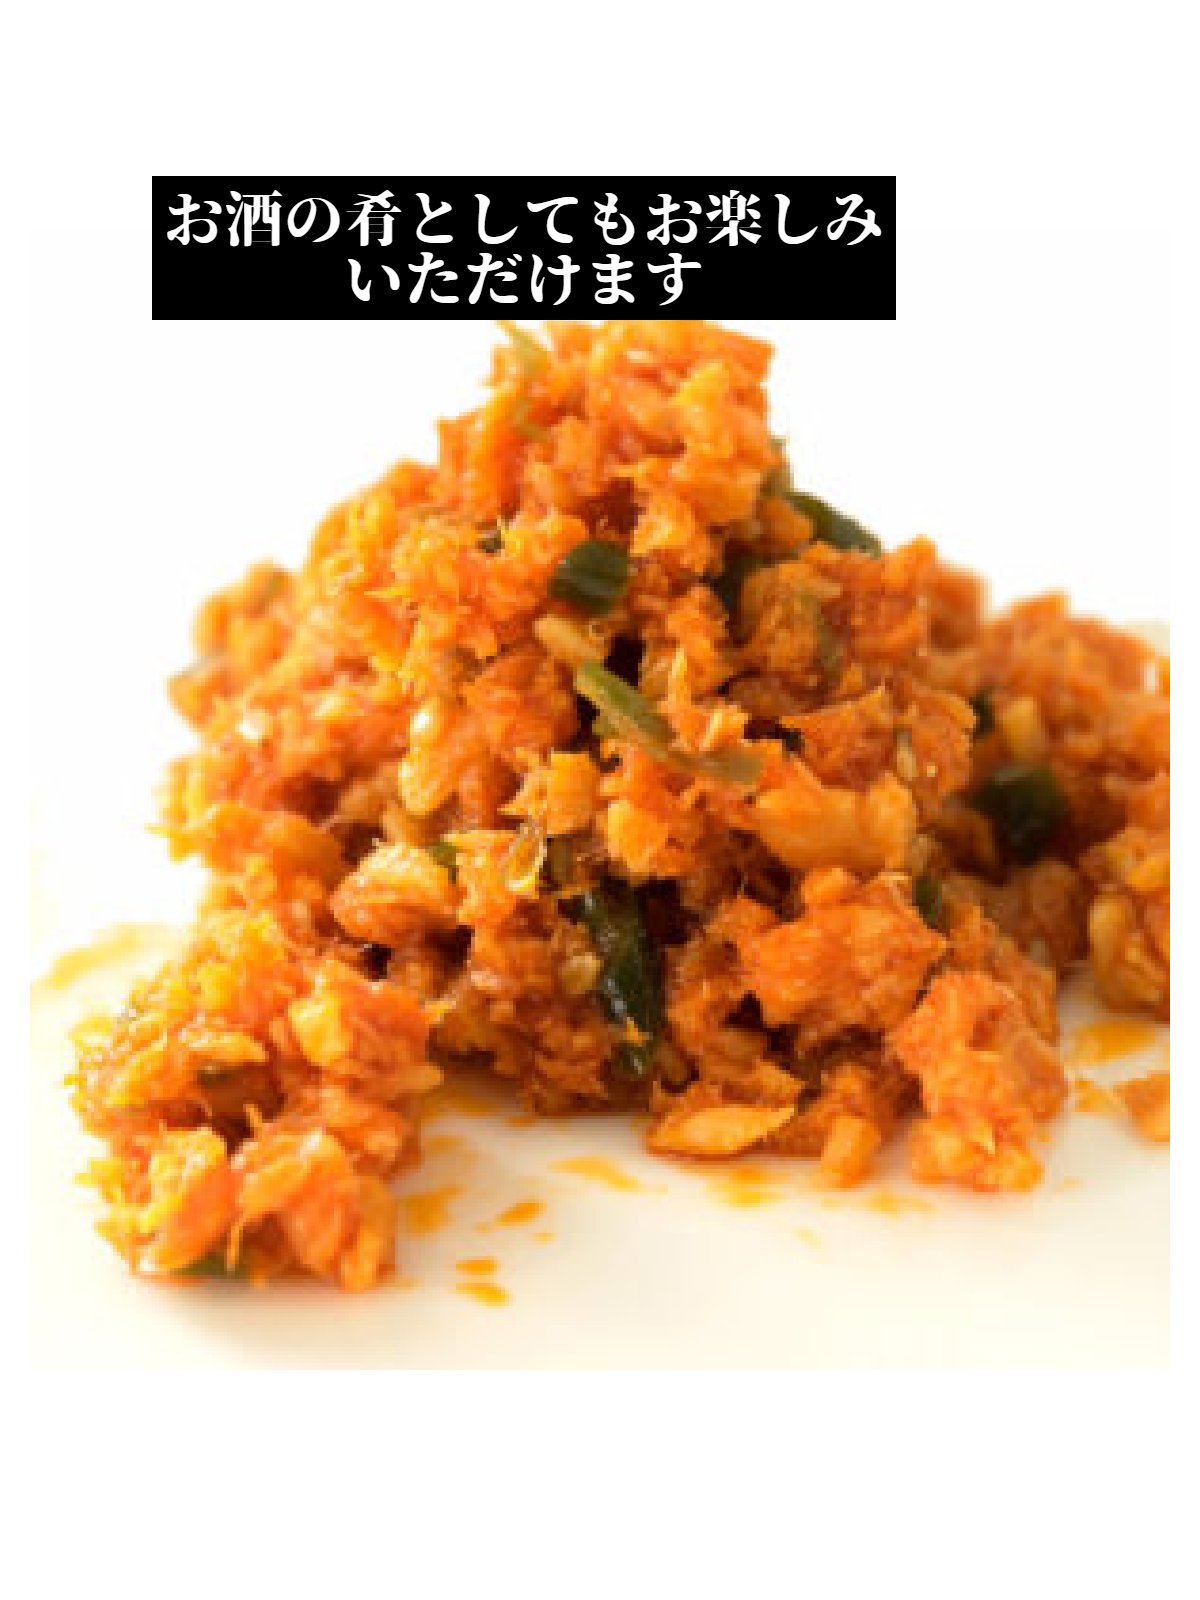 カナイフーズ 旨味ラー油鮭ン ピリ辛風味の鮭フレーク 3